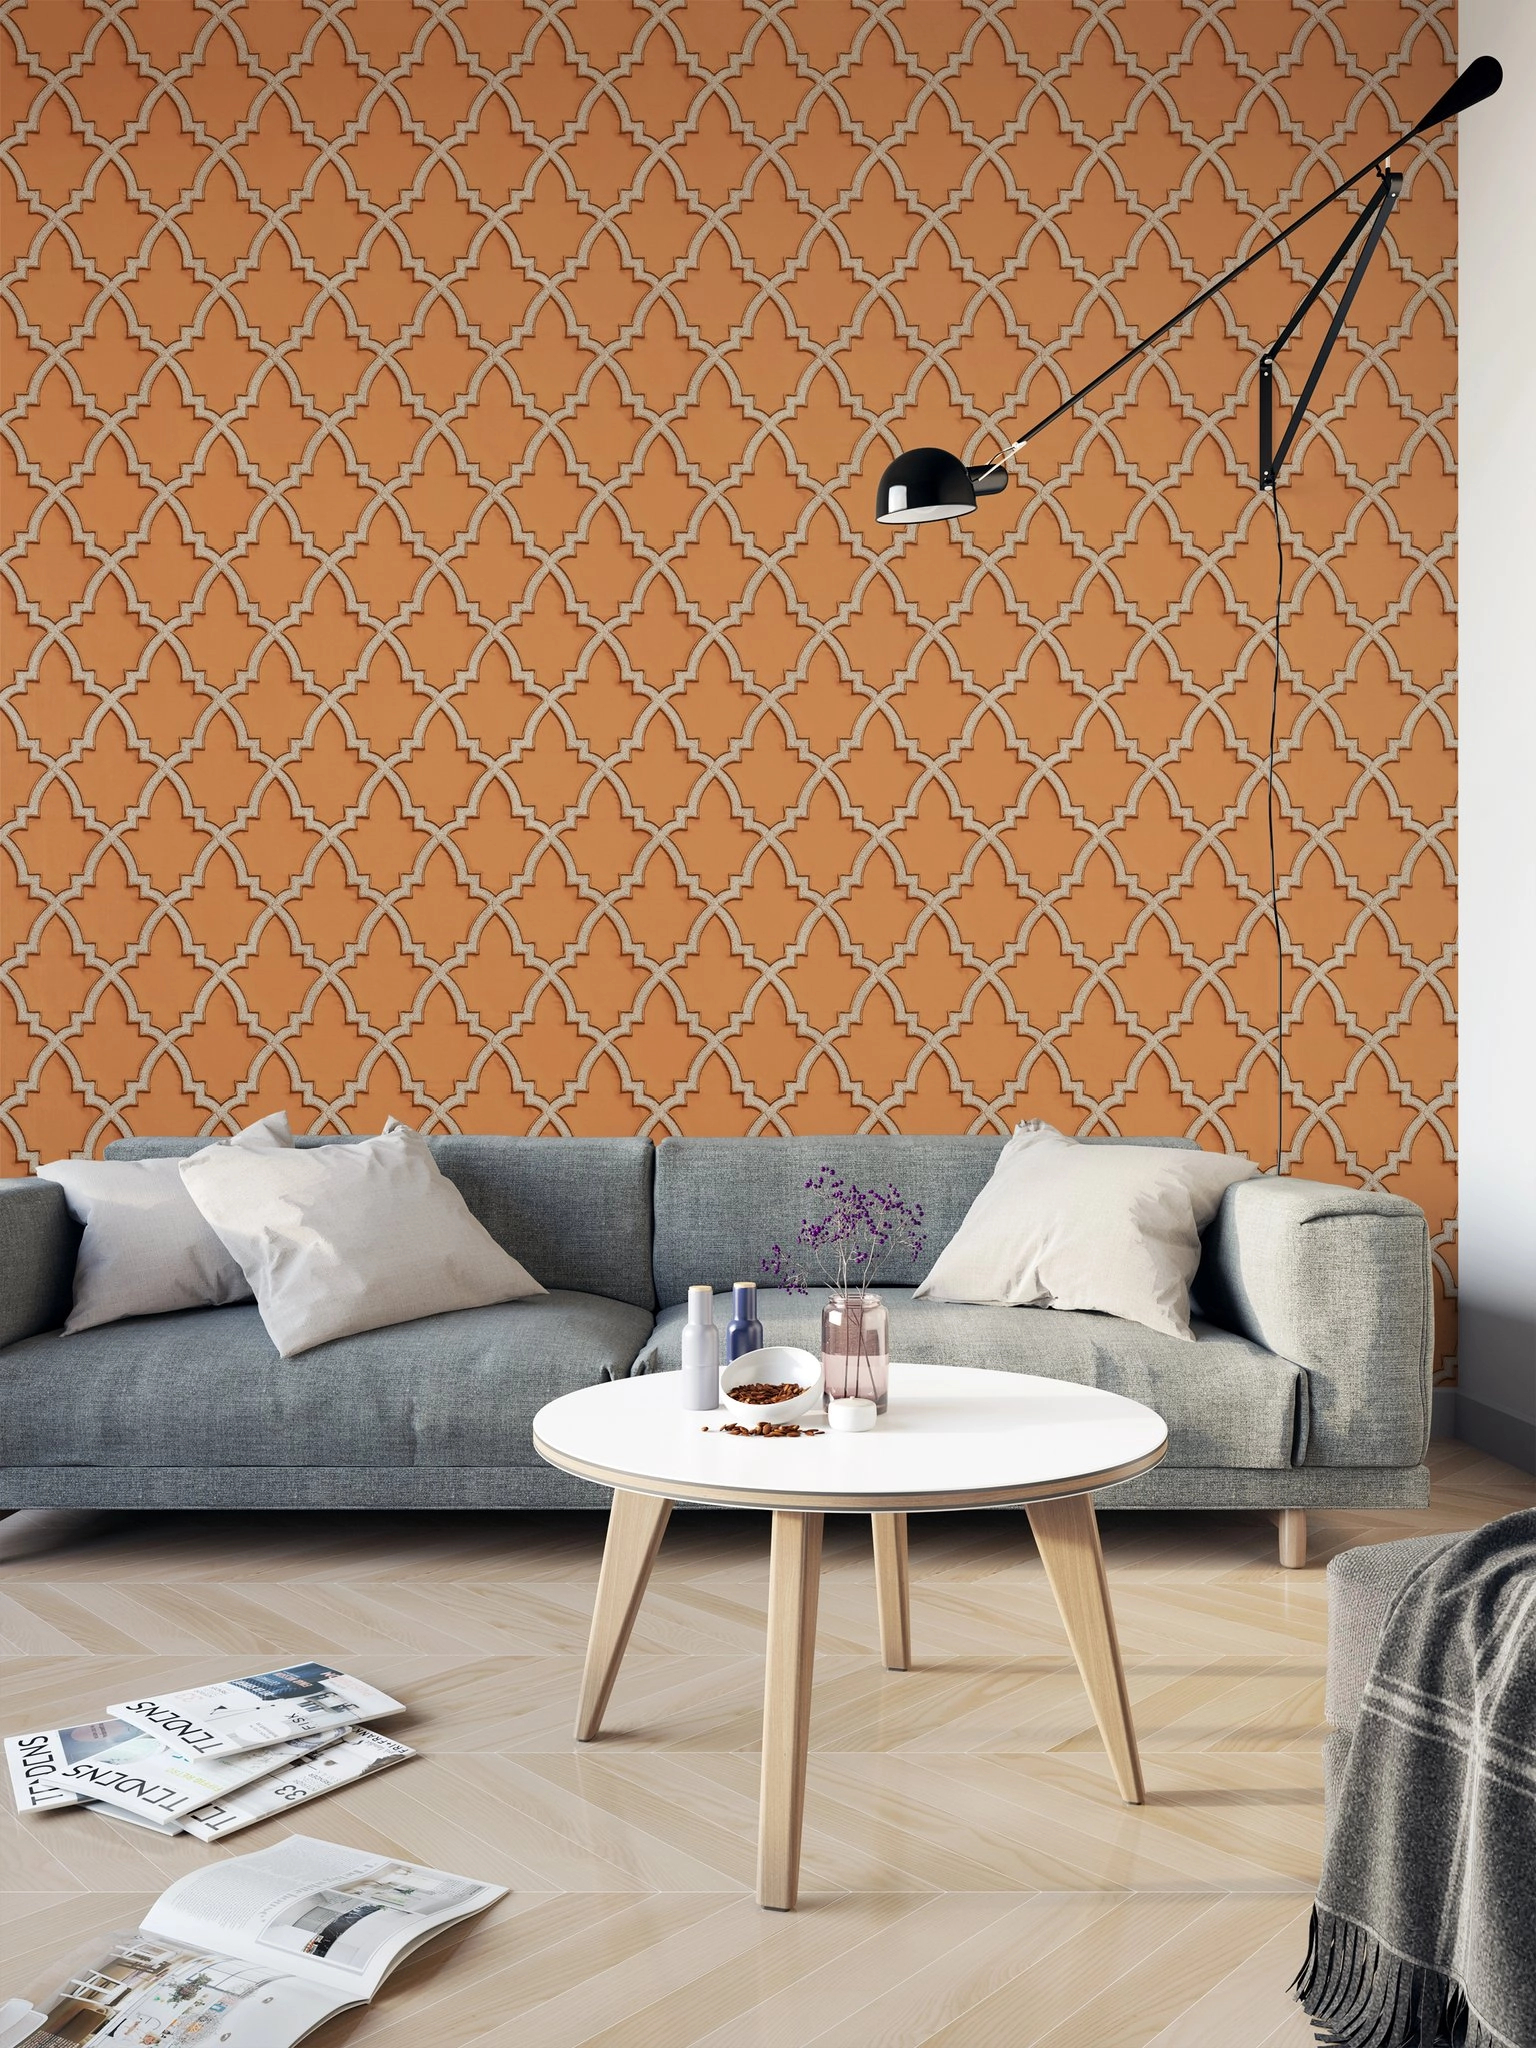 Narancs és arany színű premium design tapéta hímzett hatású geometriai mintával